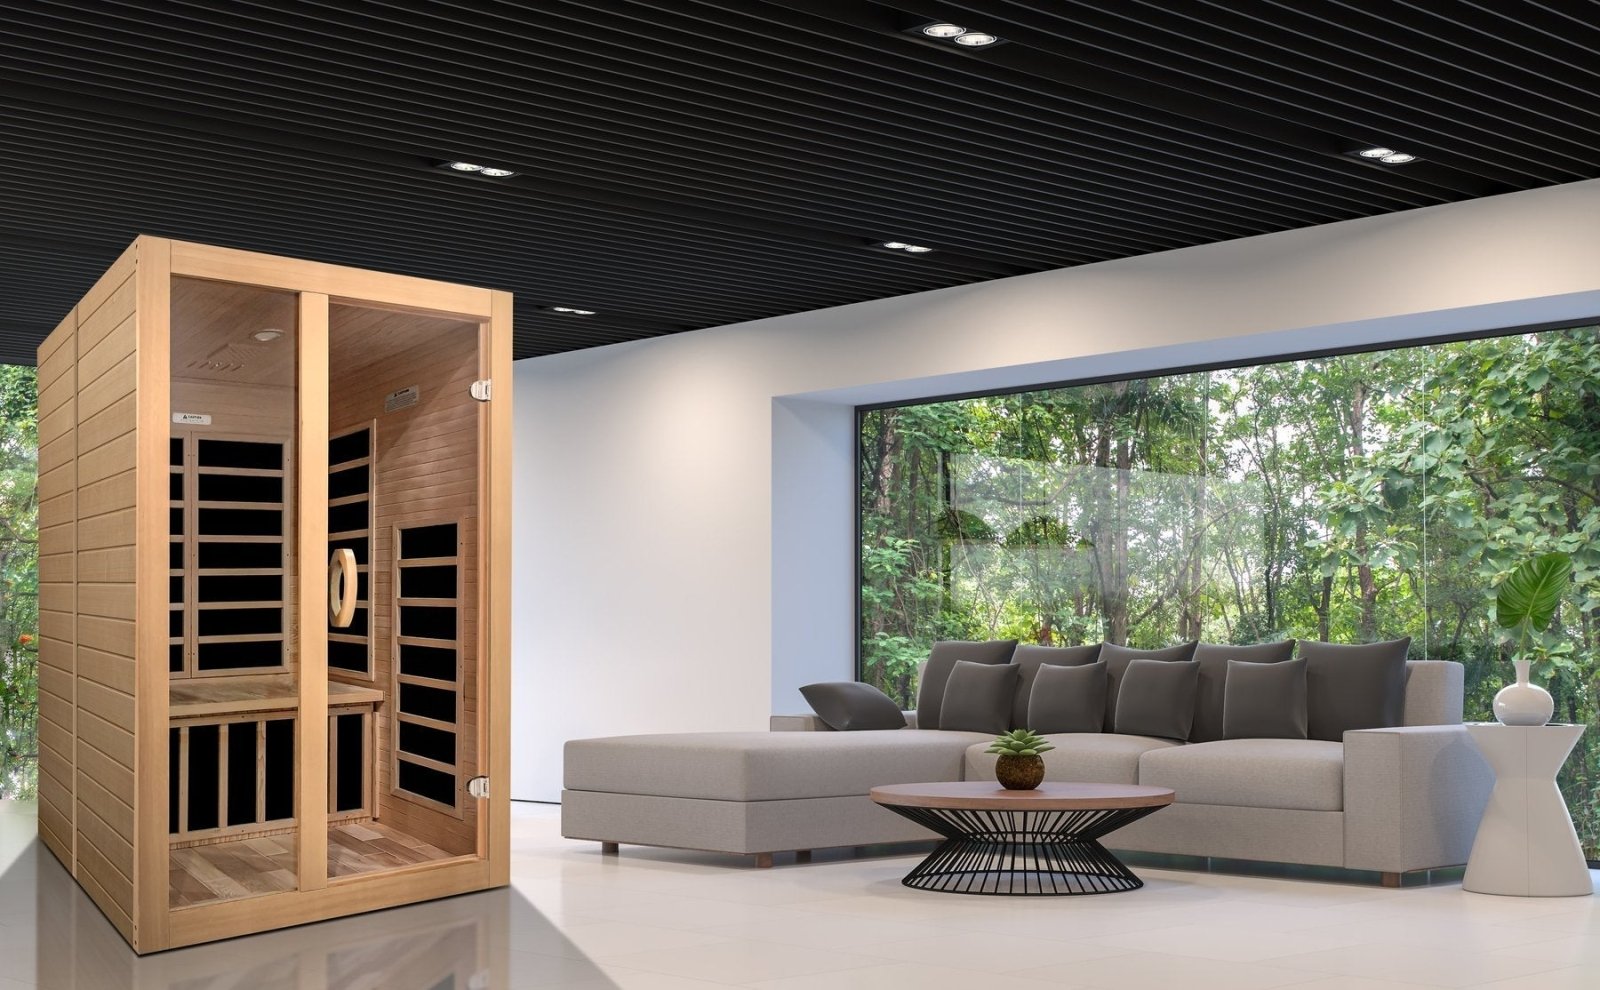 Golden Designs Low EMF 2-Person Dynamic "Santaigo" Infrared Sauna with Hemlock Wood | Model: DYN-6209-01 - DYN-6209-01